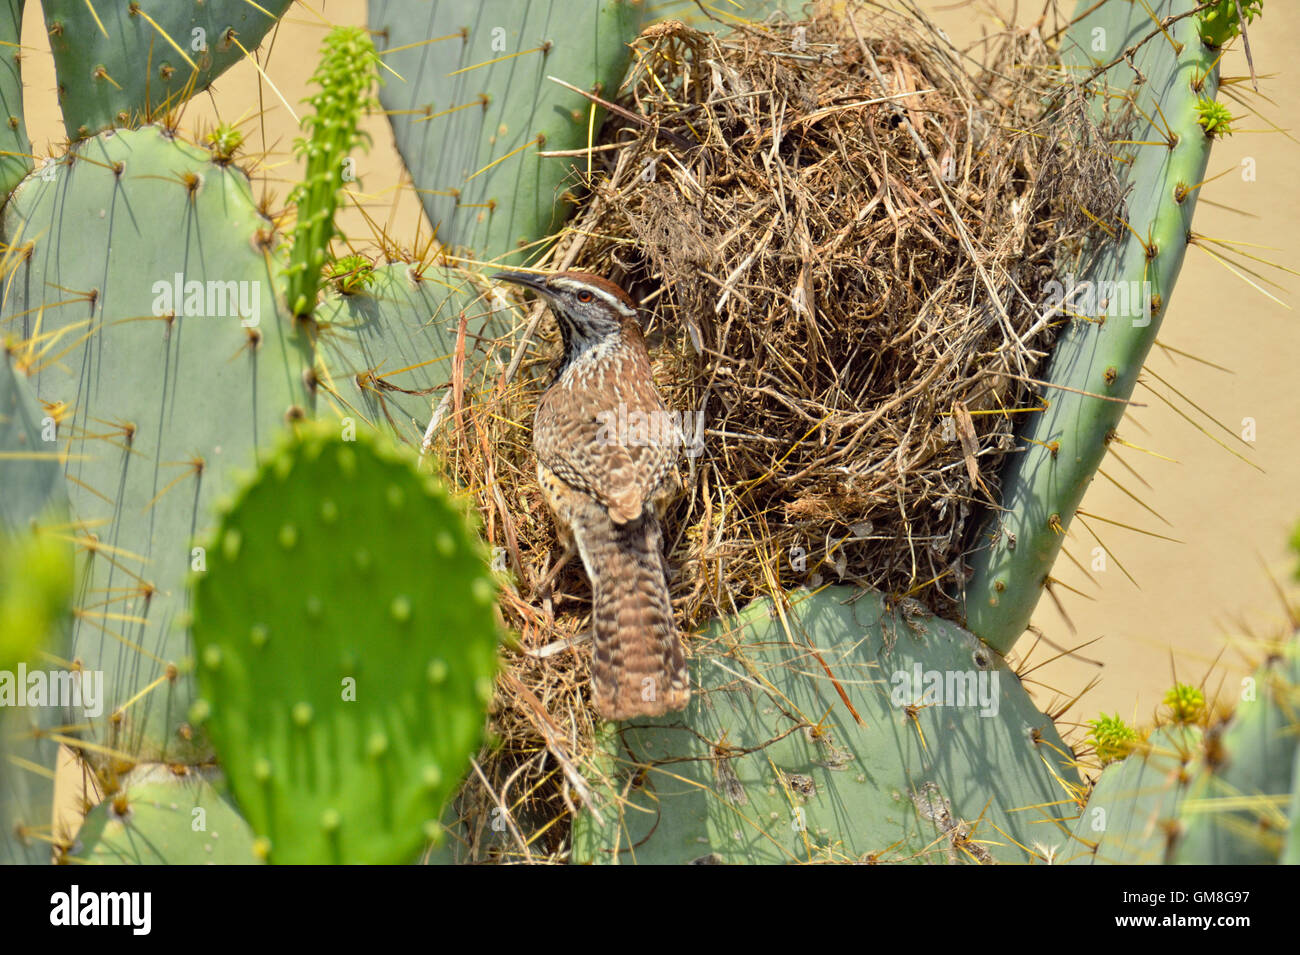 Cactus wren (Campylorhynchus brunneicapillus) en nidos construidos en cactus, en la ciudad de Río Grande, Texas, EE.UU. Foto de stock